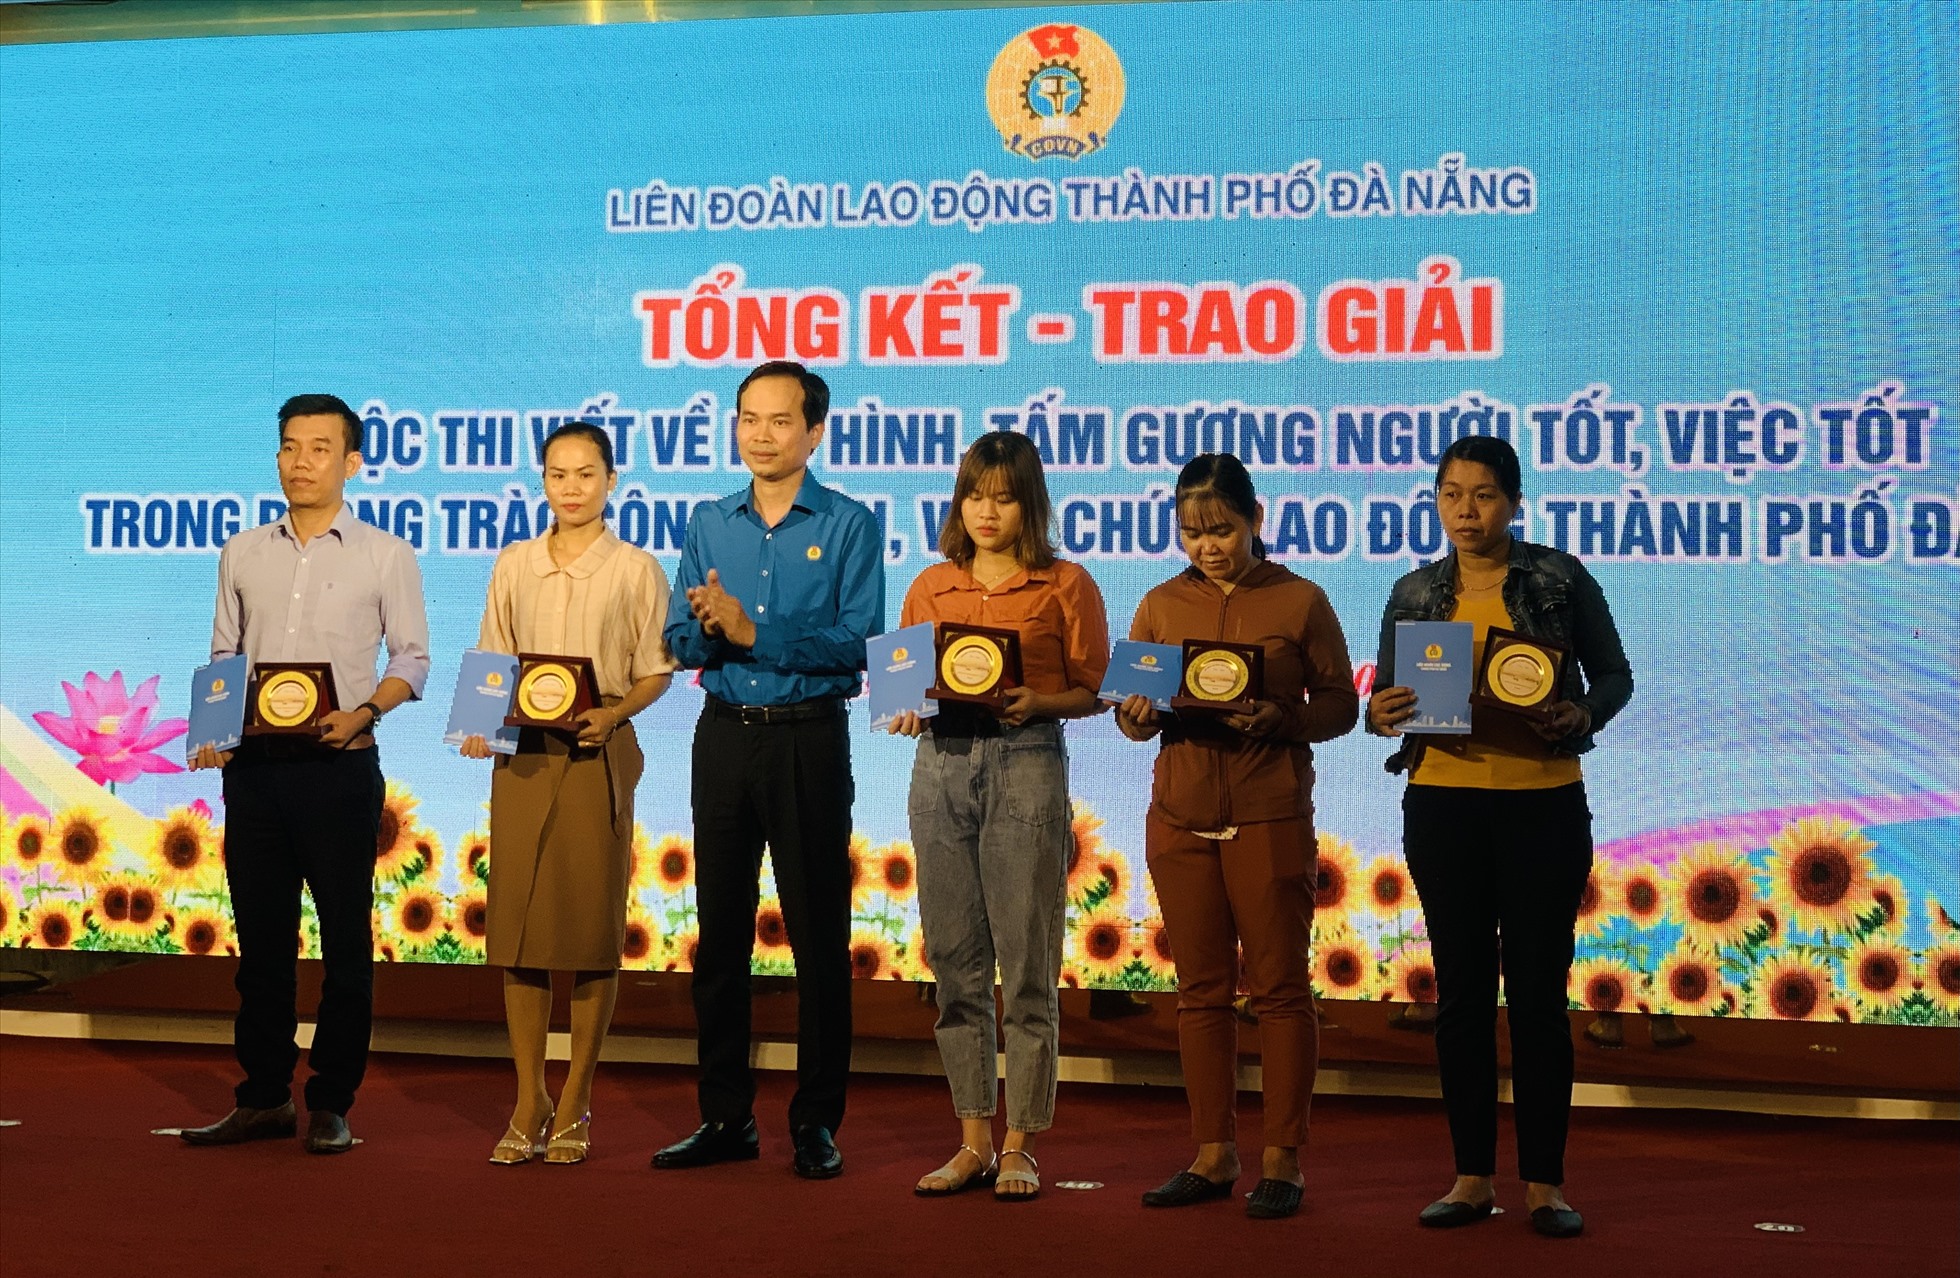 Ông Nguyễn Duy Minh - Chủ tịch LĐLĐ thành phố Đà Nẵng - trao tặng thưởng cho các nhân vật đặc biệt trong cuộc thi lần thứ nhất, năm 2022. Ảnh: Tường Minh